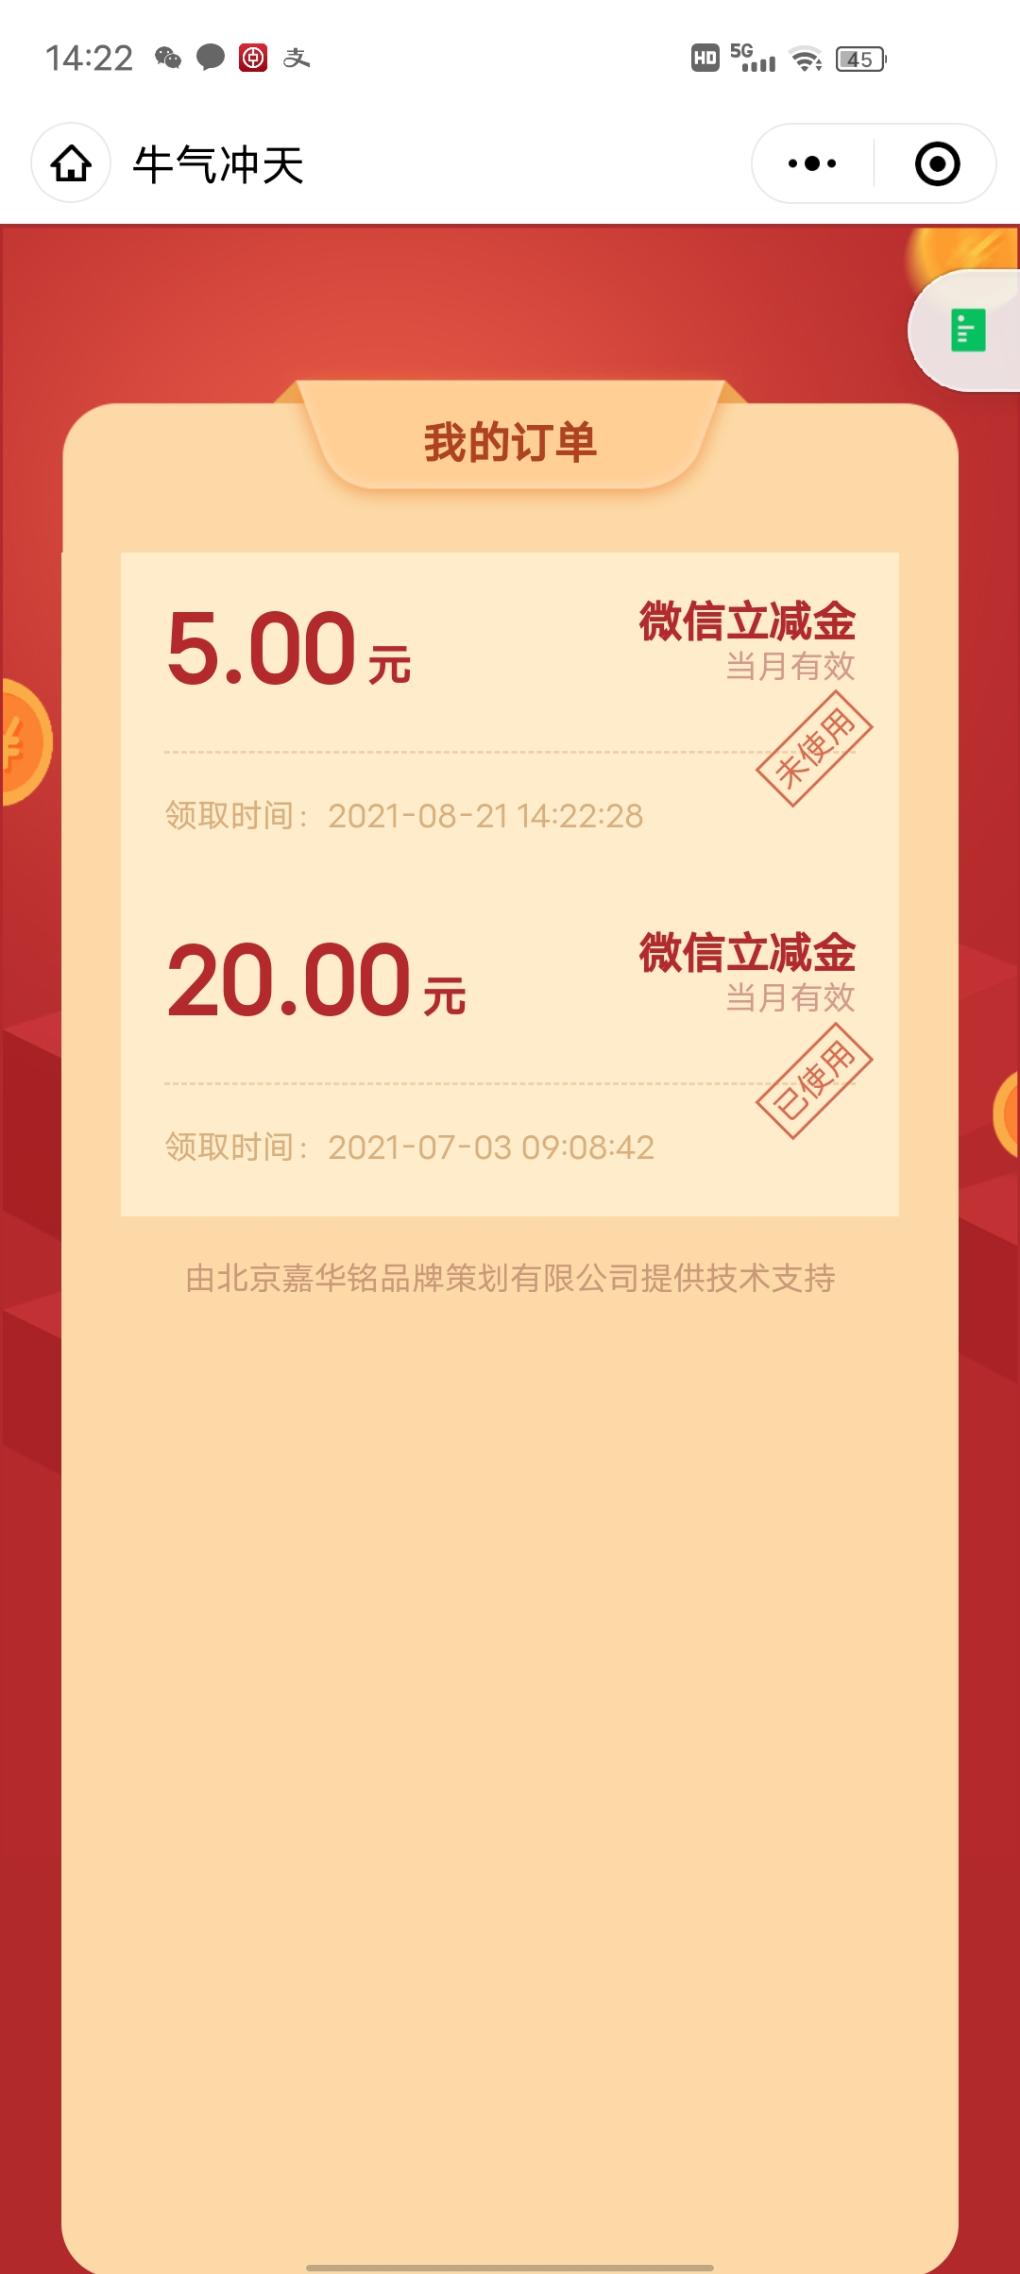 限河北地区中国银行第二福利-惠小助(52huixz.com)